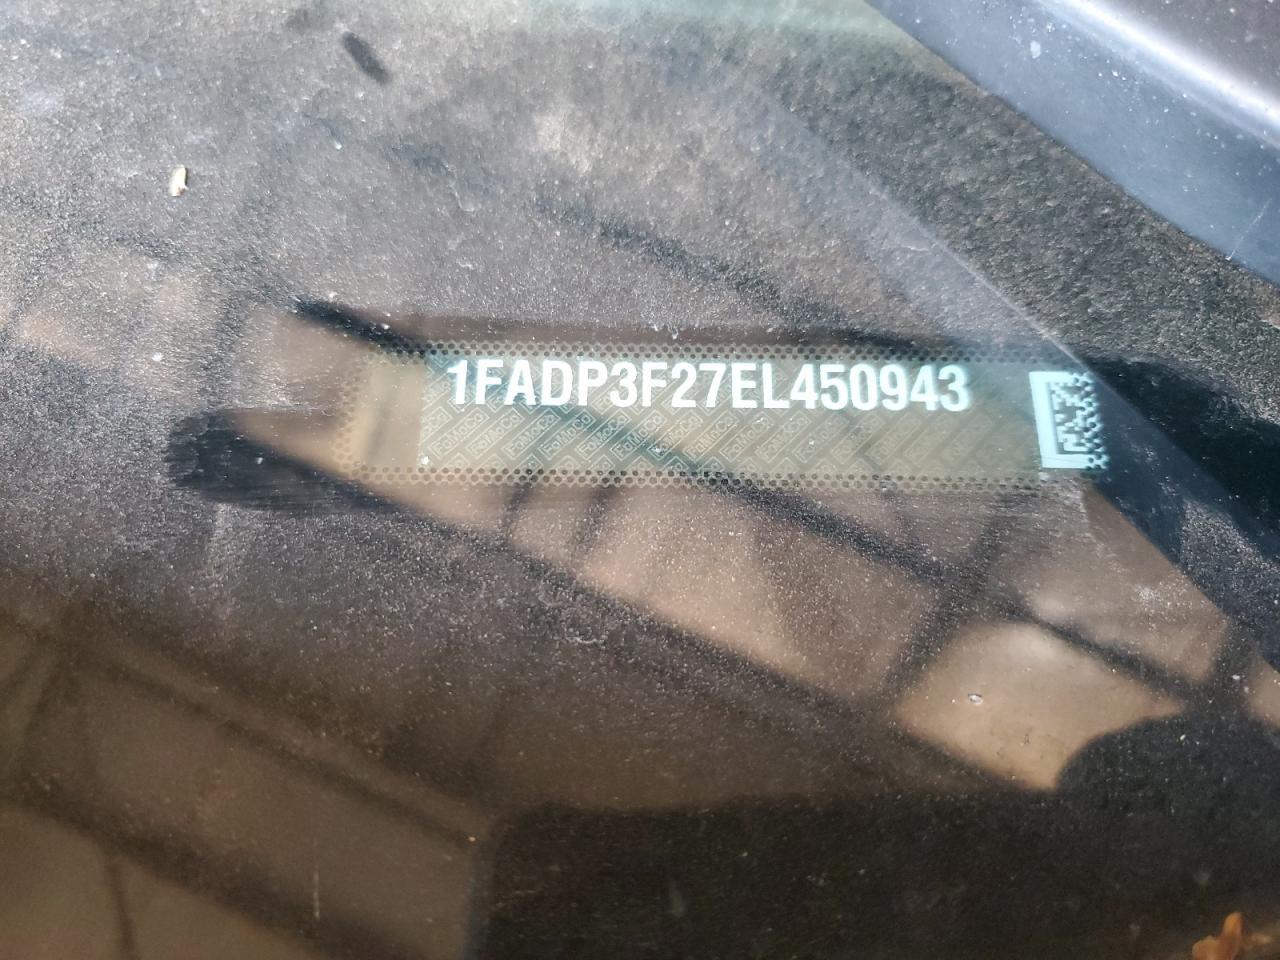 2014 Ford Focus Se vin: 1FADP3F27EL450943